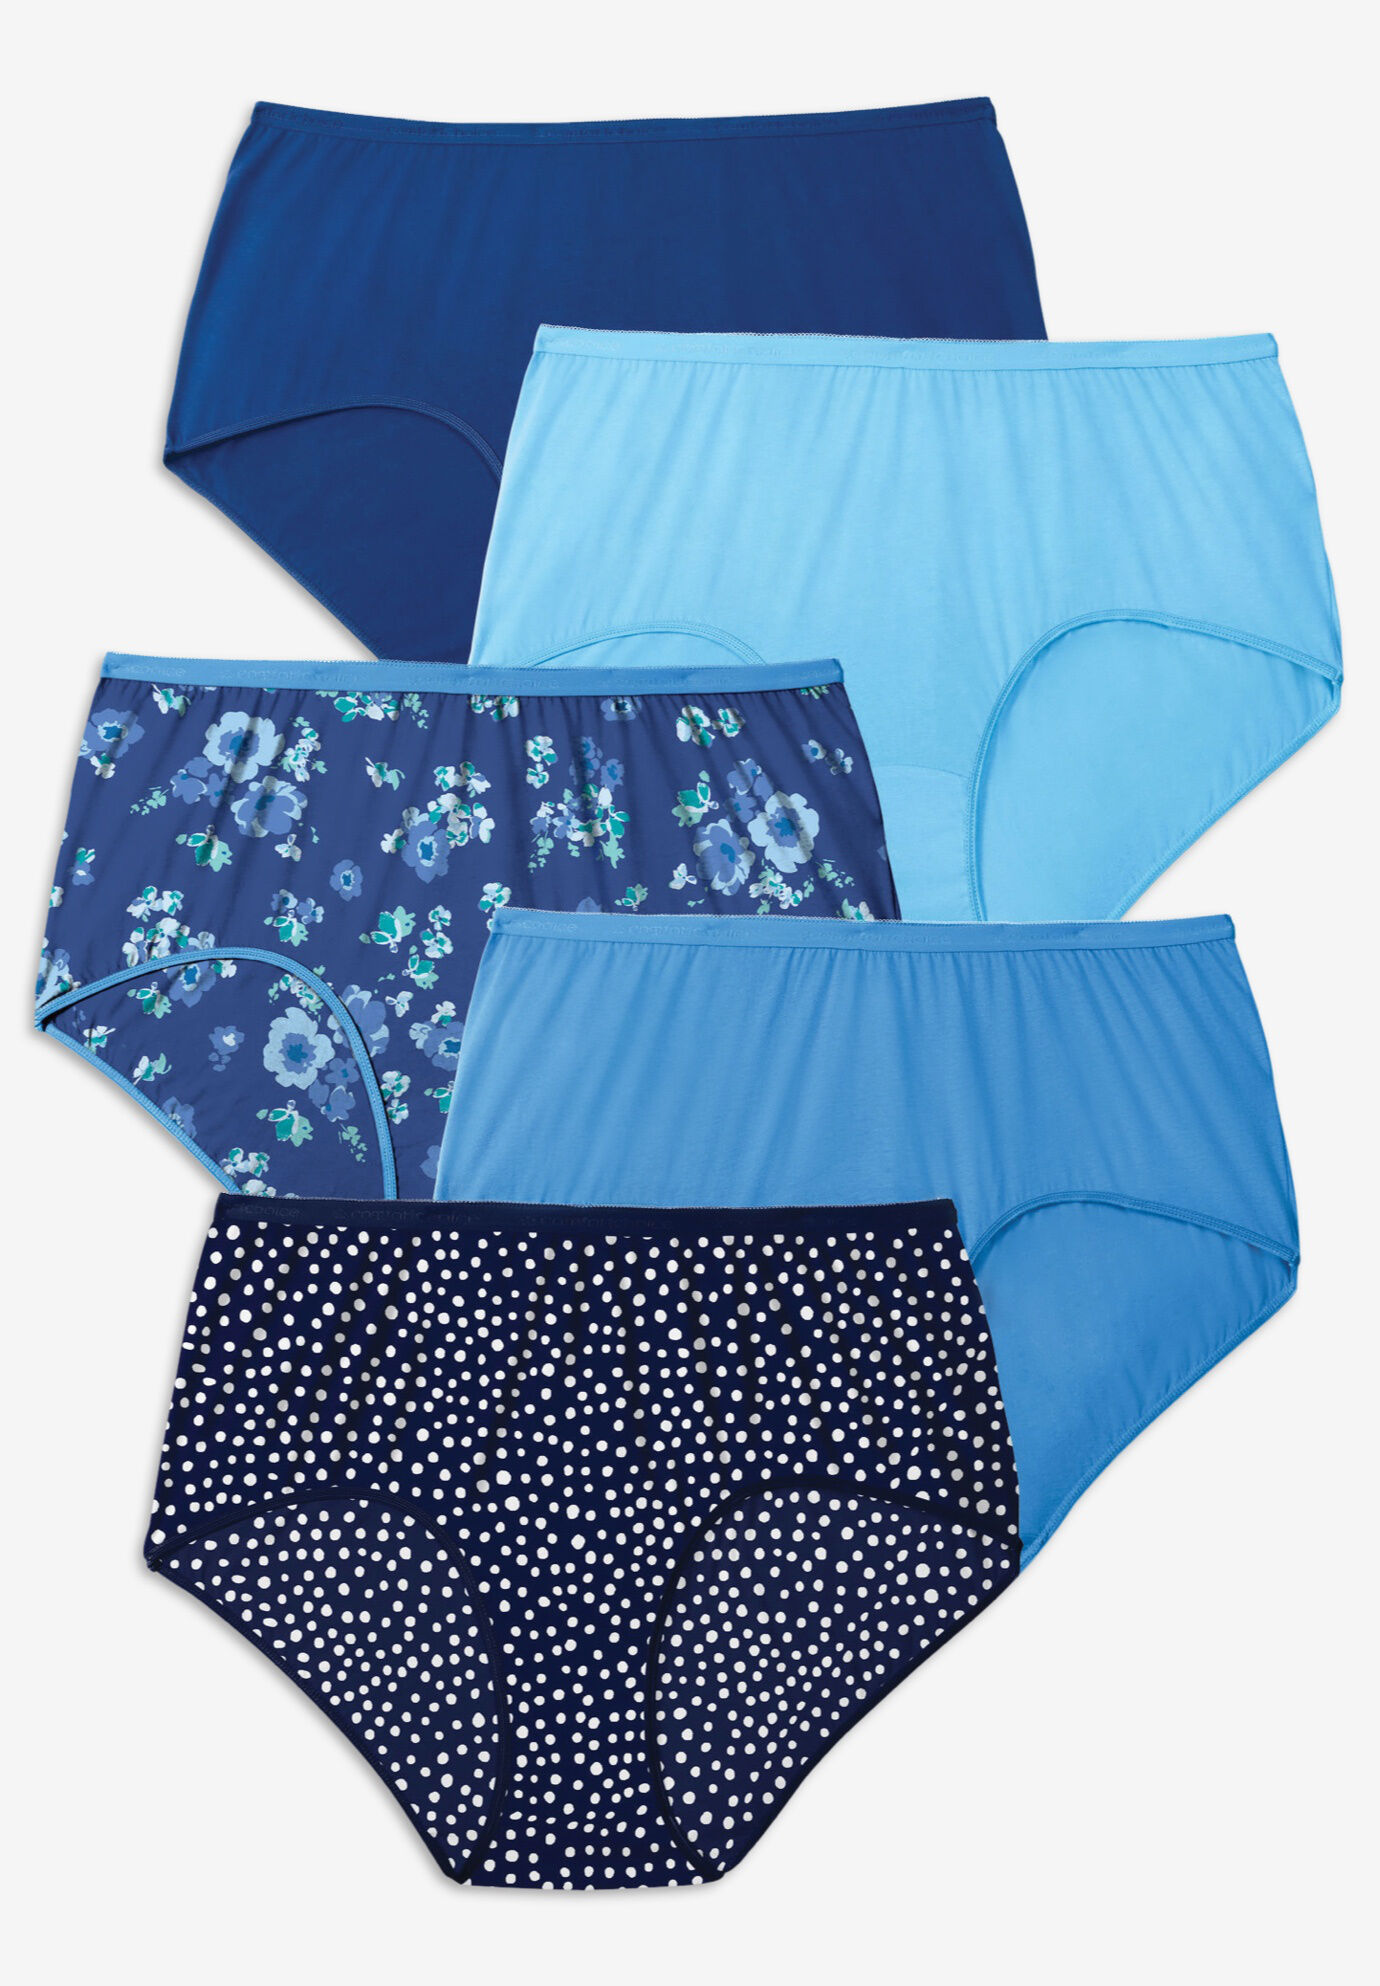 Comfort Choice Women's Plus Size Nylon Brief 5-Pack Underwear